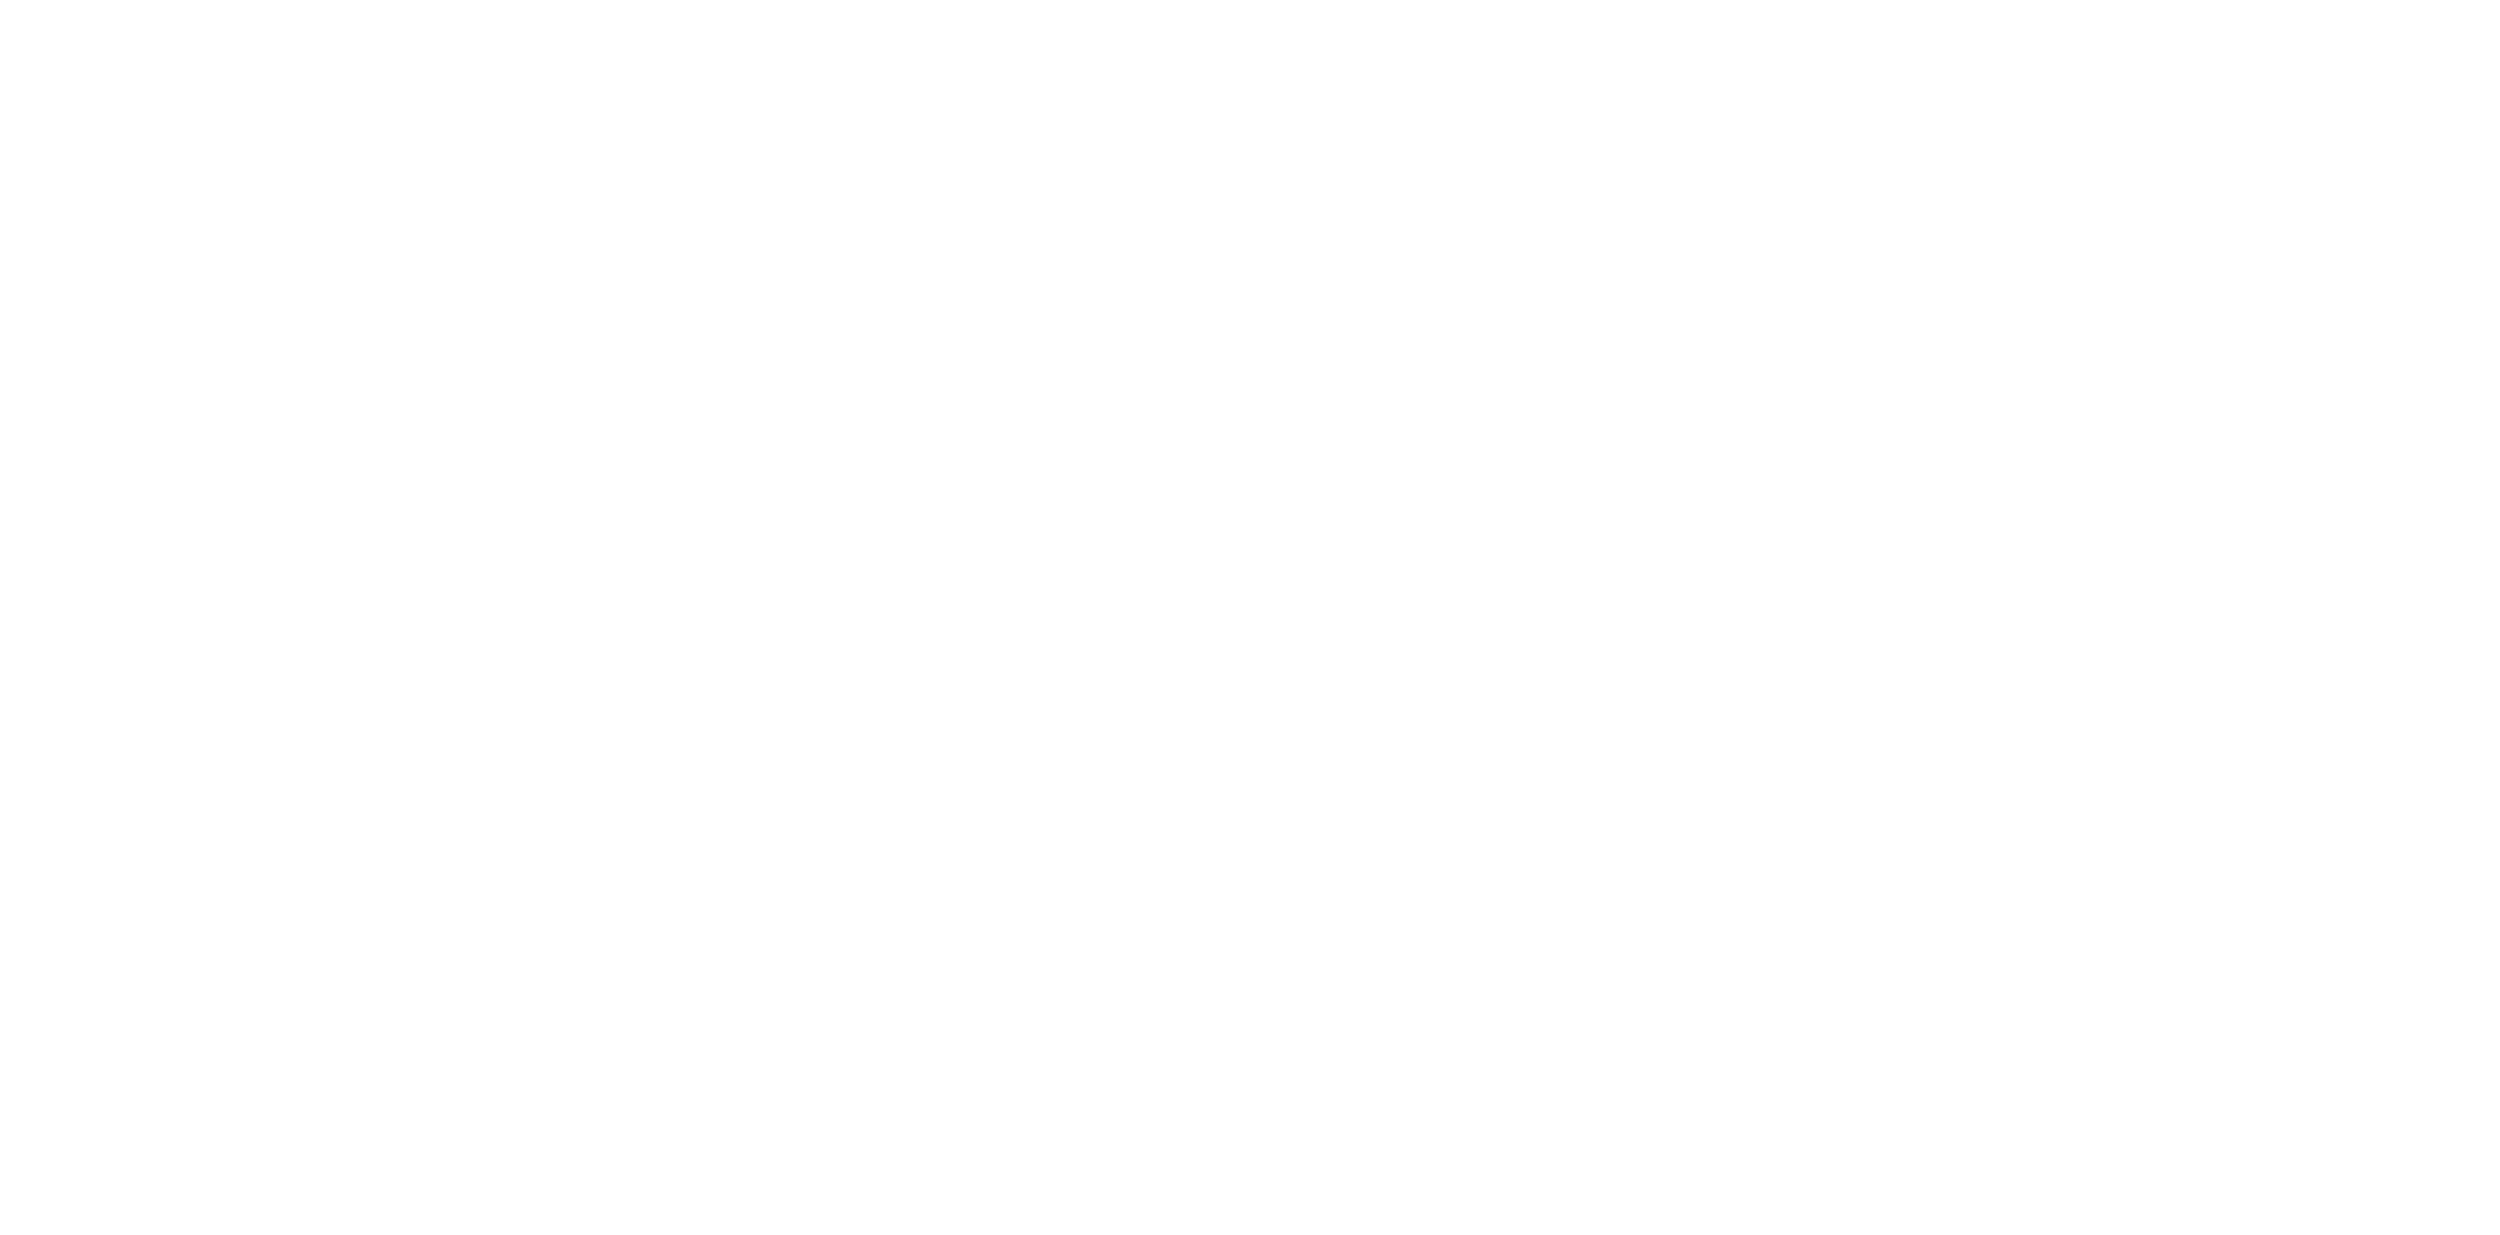 Superstar Nomads - Live!